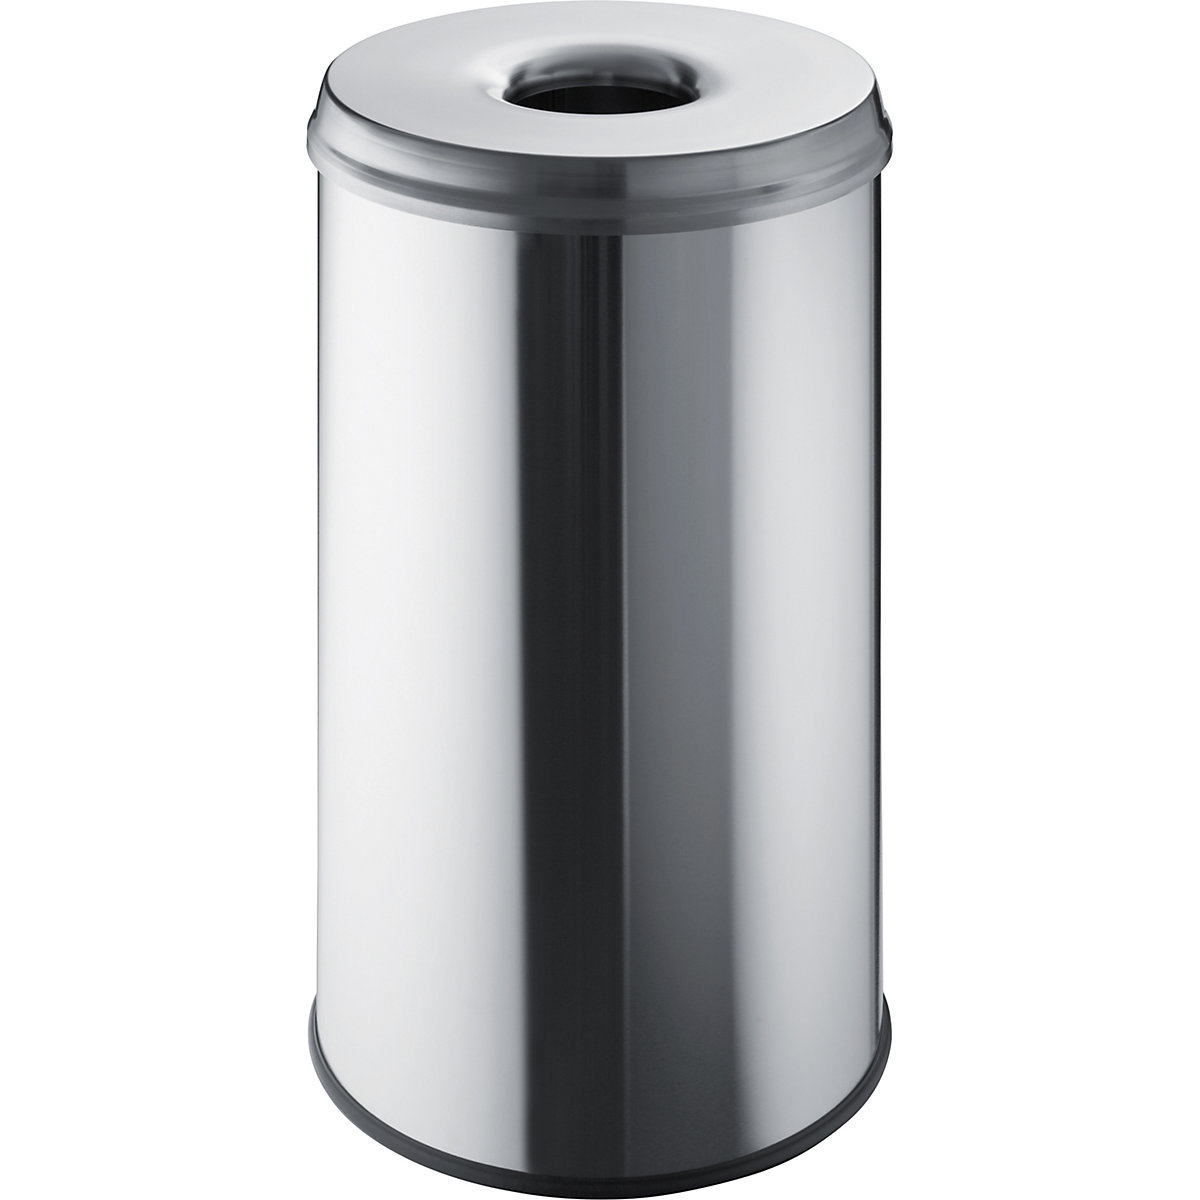 Coletor de lixo de segurança – helit, volume 50 l, AxØ 620 x 340 mm, aço inoxidável, embalagem de 2 unid.-1